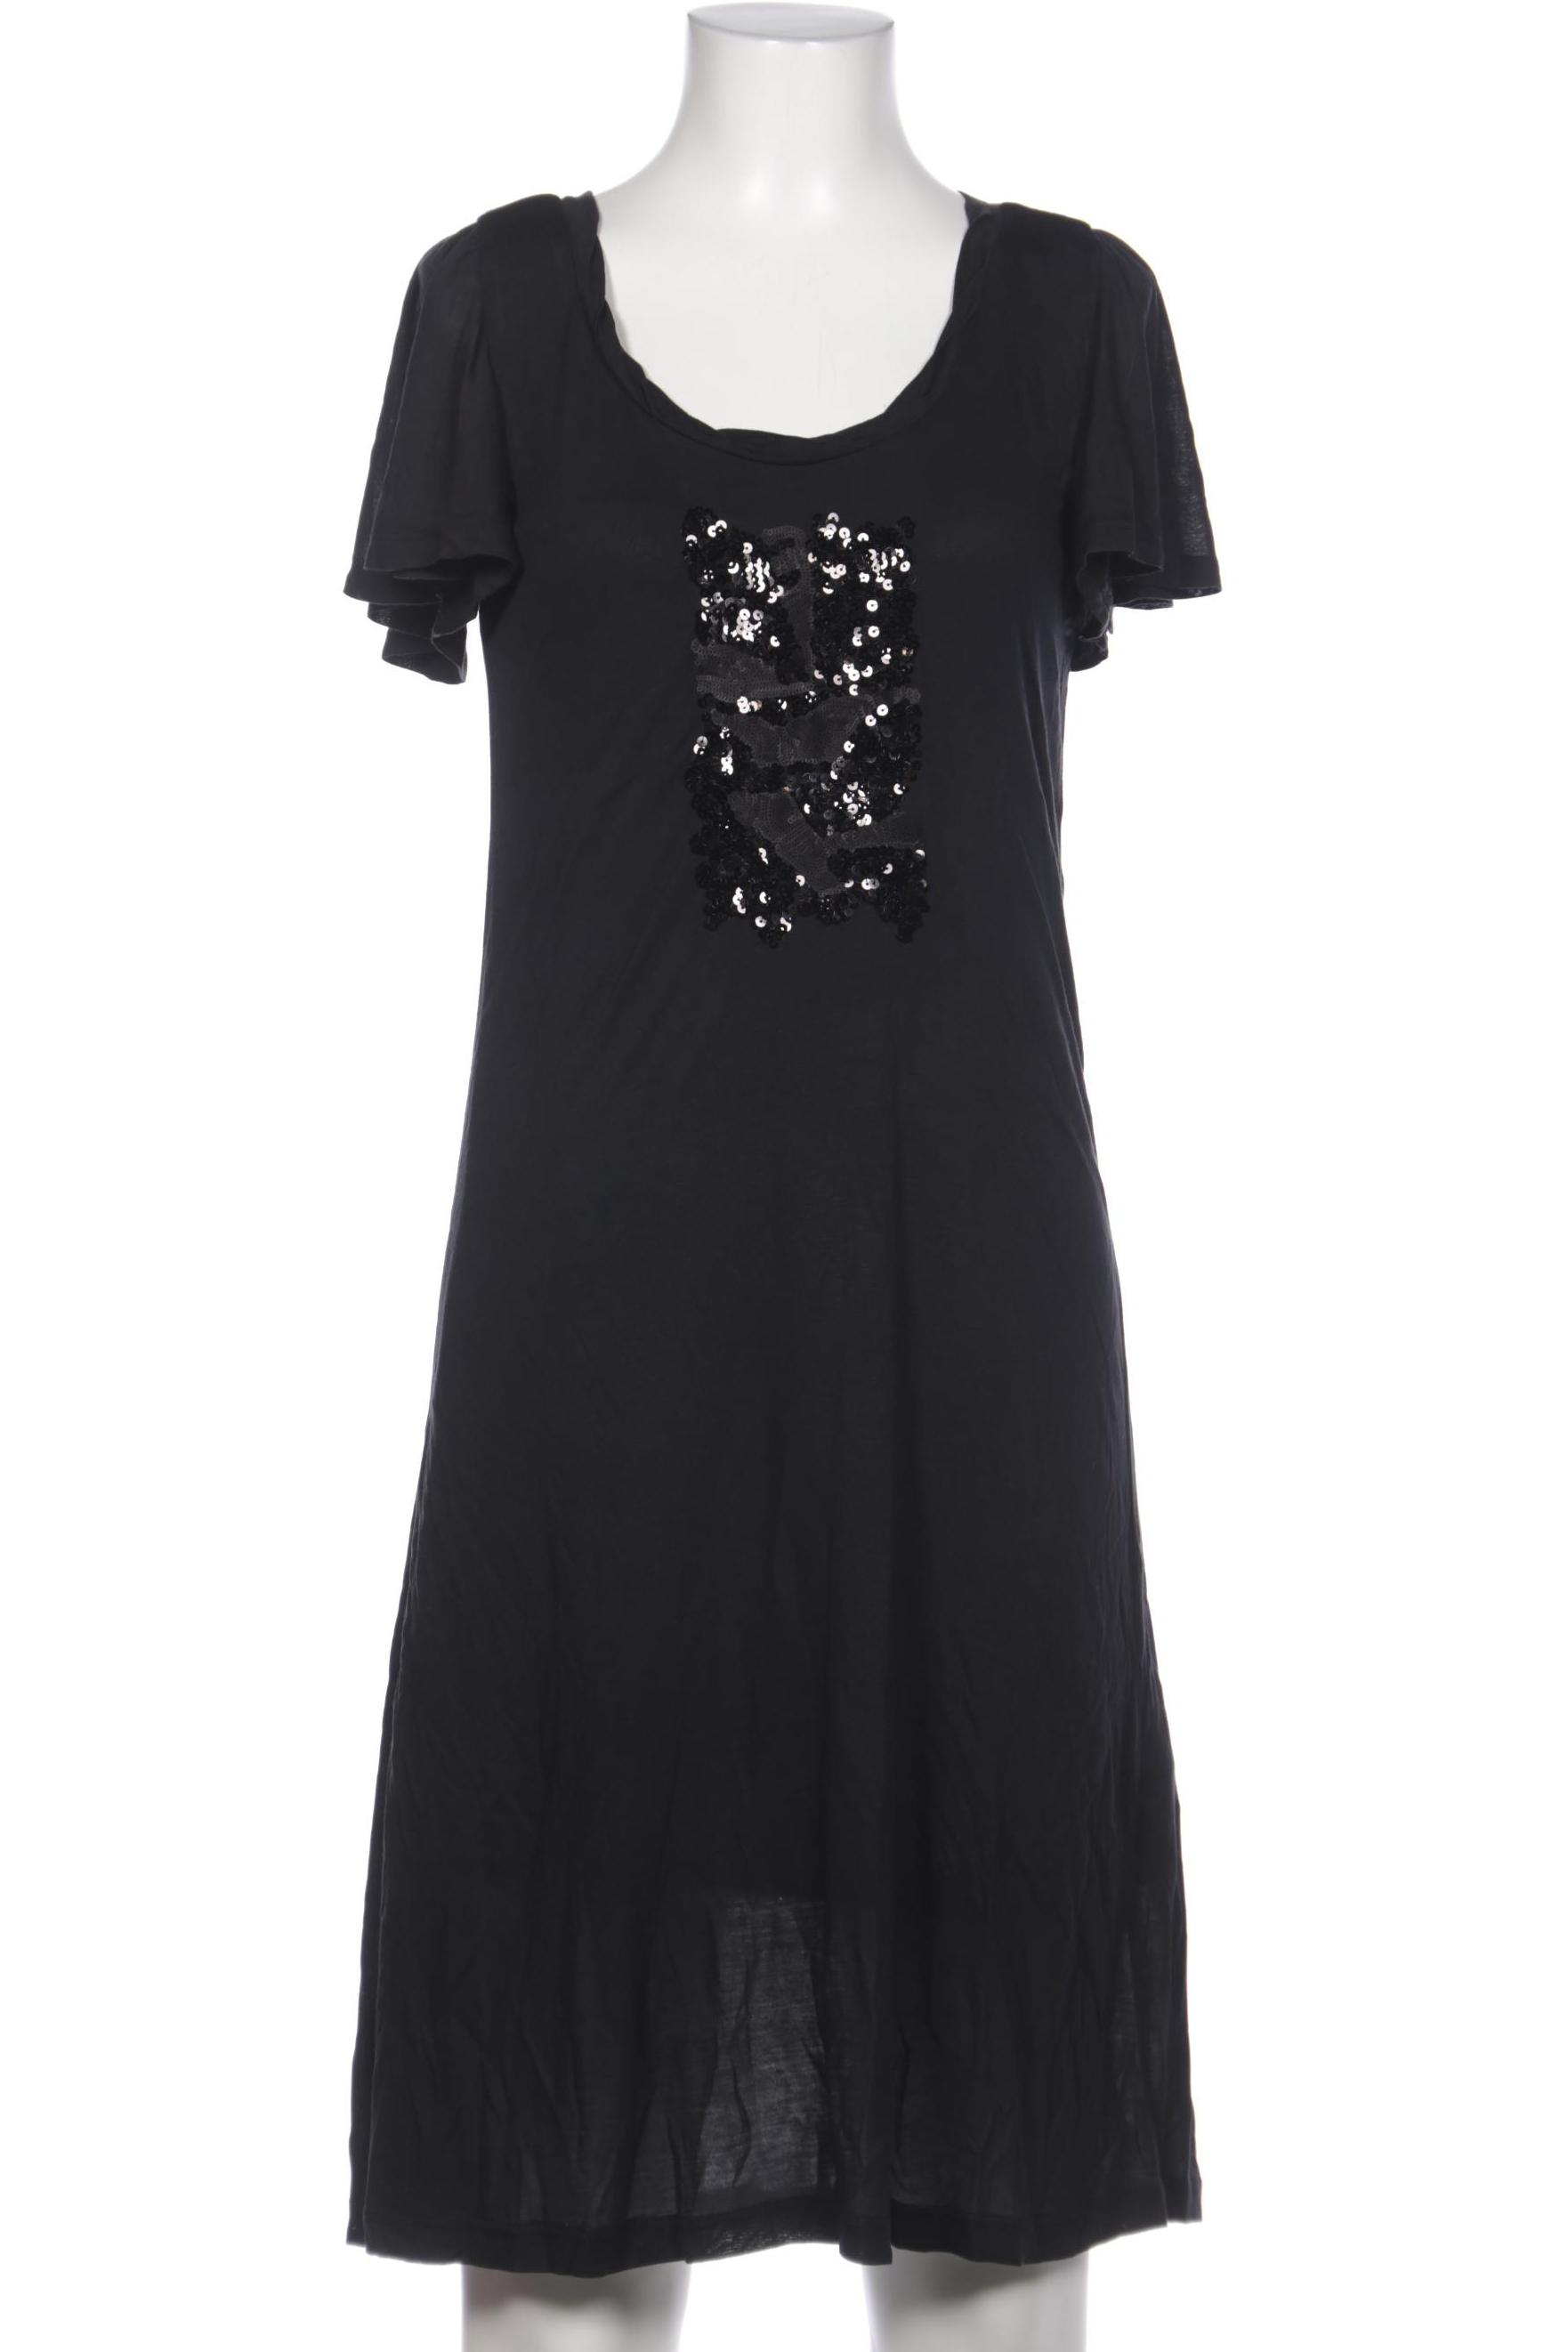 TURNOVER Damen Kleid, schwarz von TURNOVER